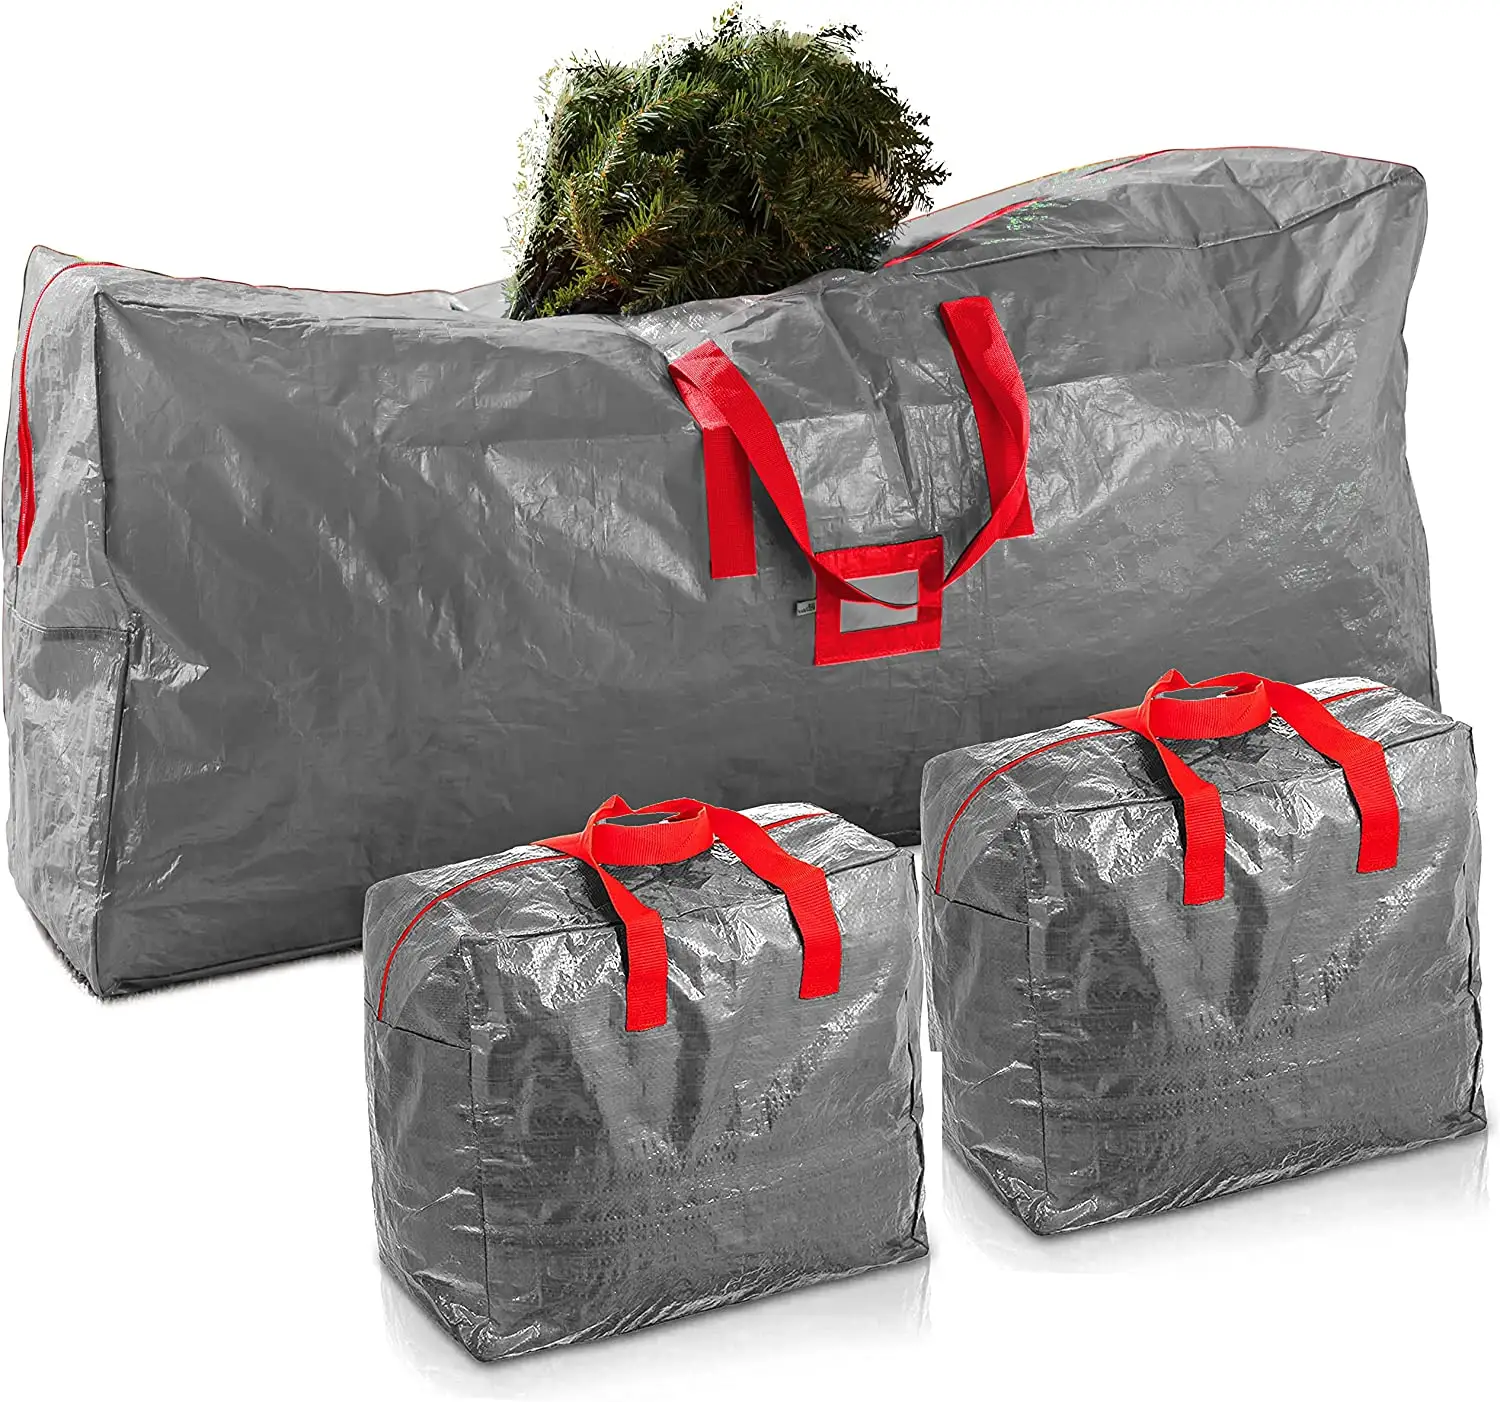 3 पैक क्रिसमस कृत्रिम पेड़ बैग अप करने के लिए फिट बैठता है 7.5 पैर कृत्रिम क्रिसमस पेड़ पेड़ों के लिए अतिरिक्त बड़े भंडारण कंटेनर